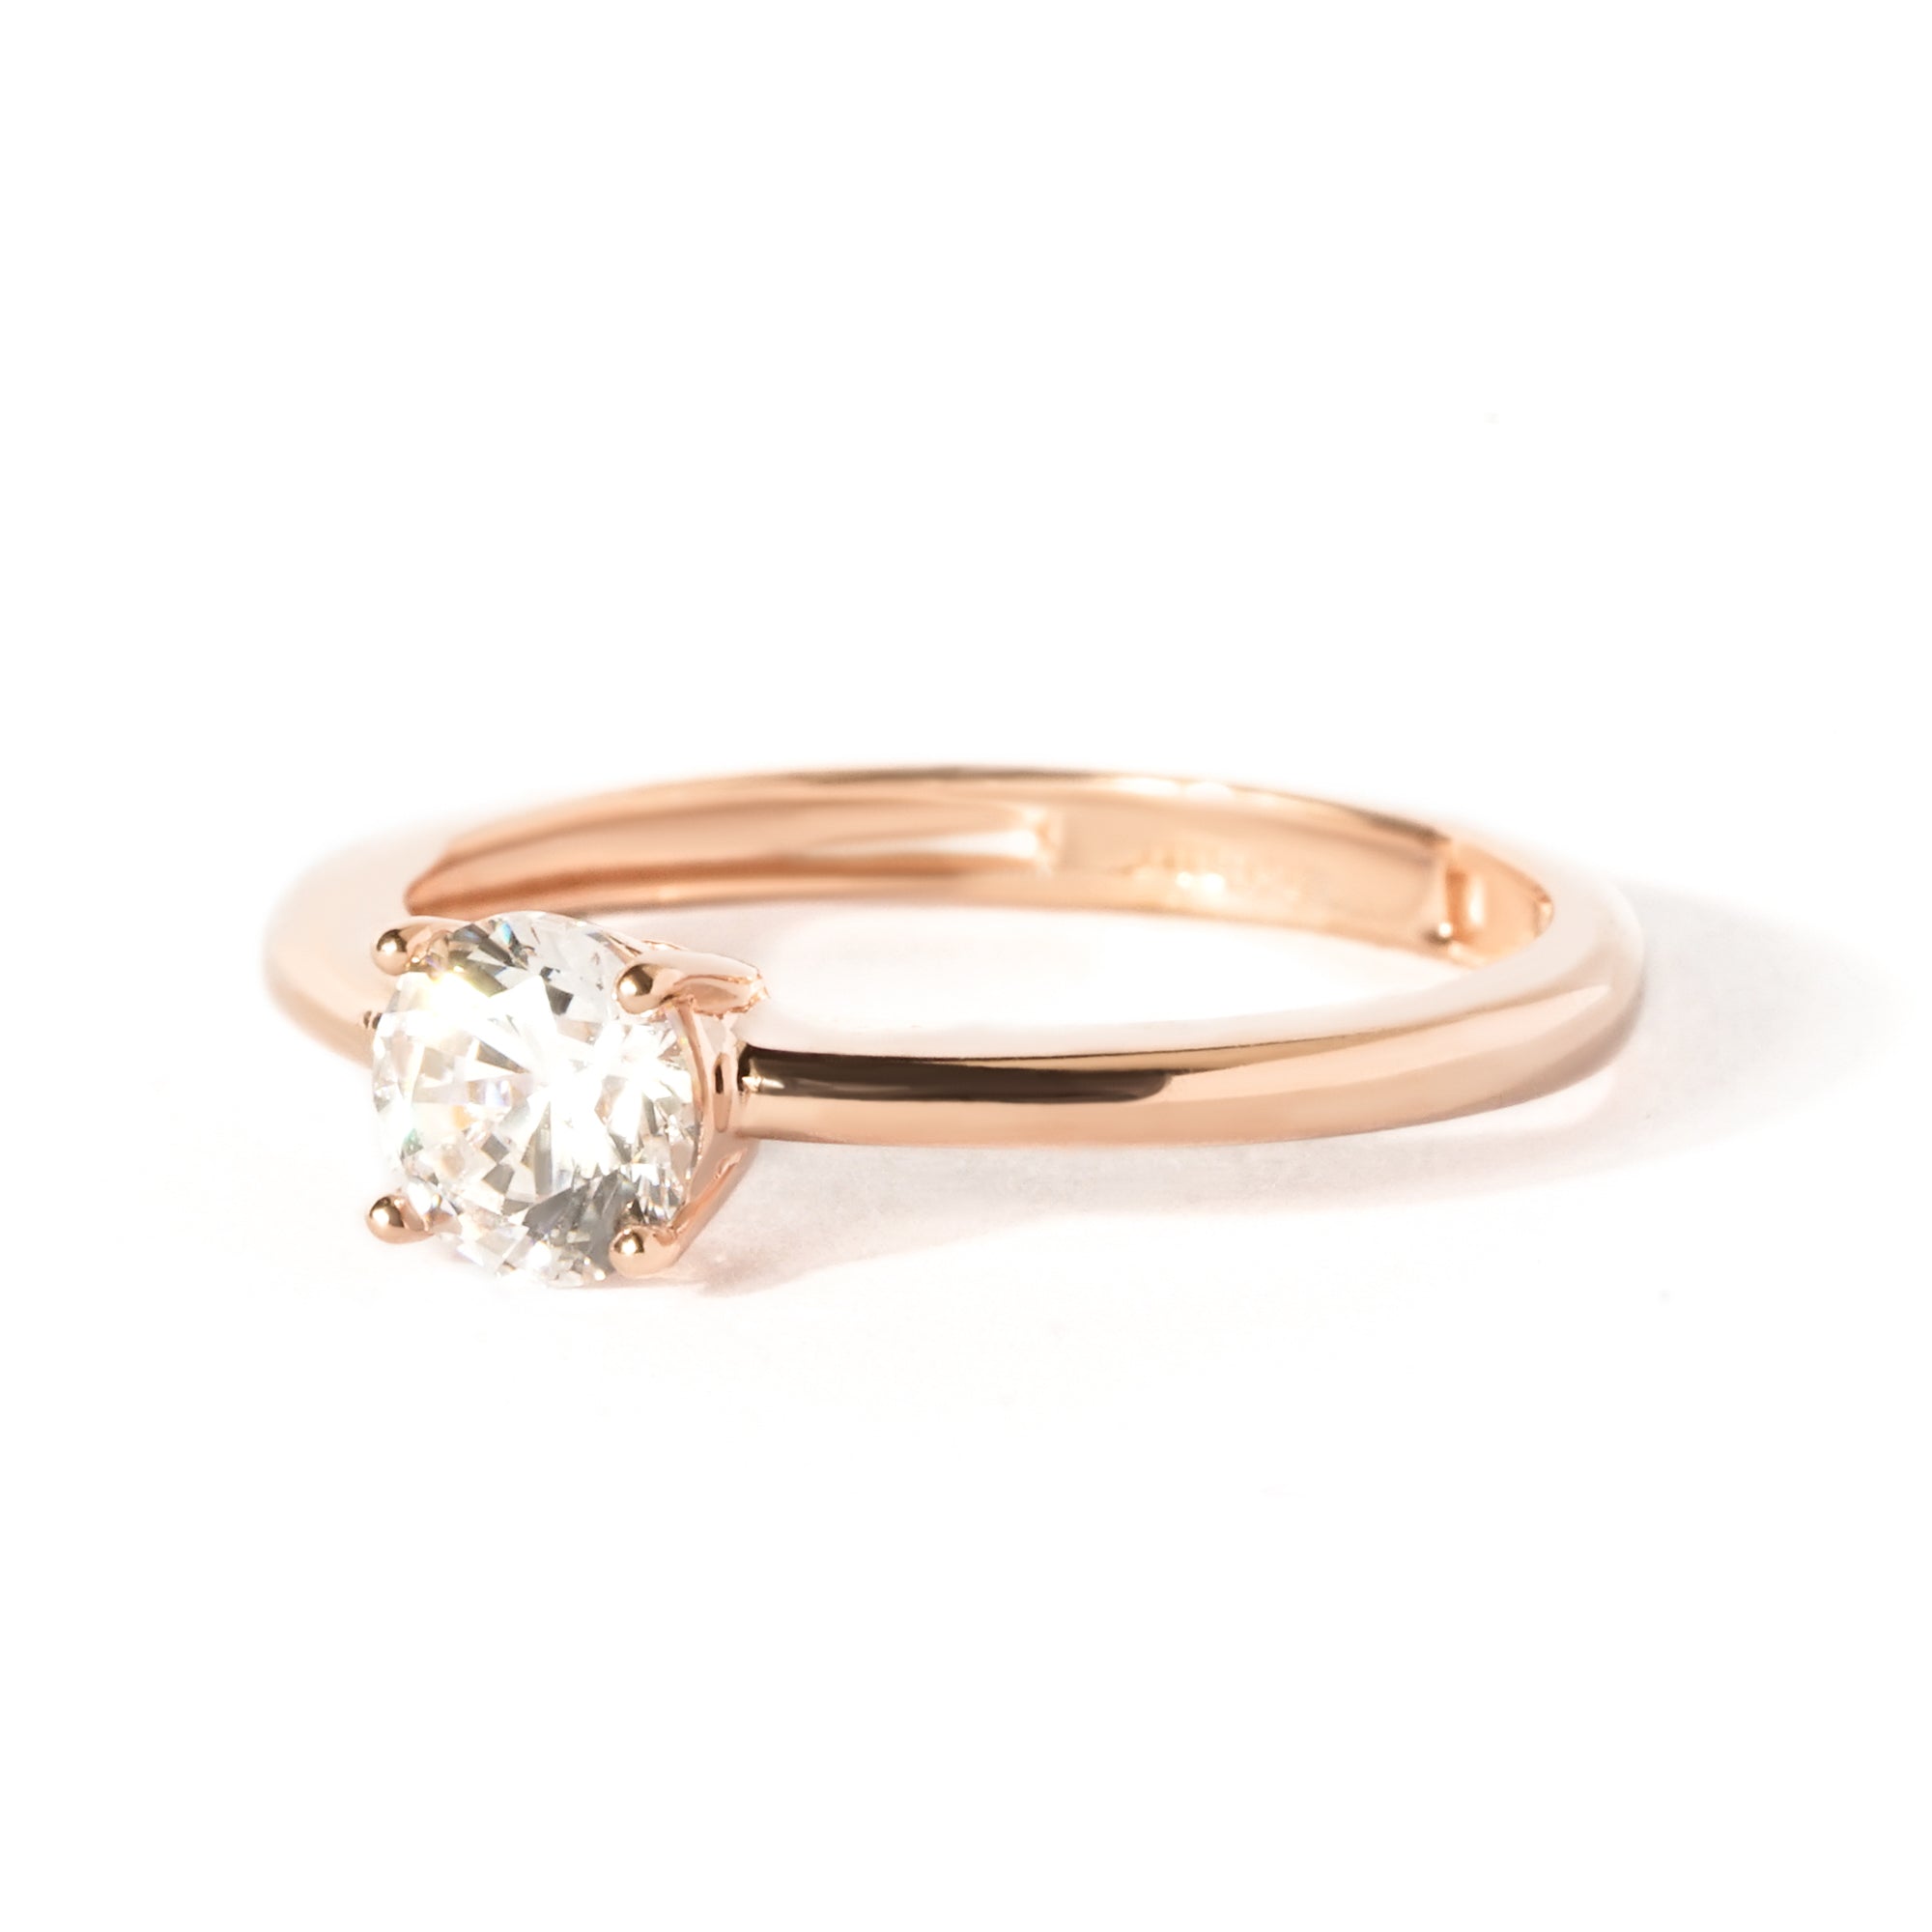 Isla Gold Ring - WS 02 Seasons - Juene Jewelry